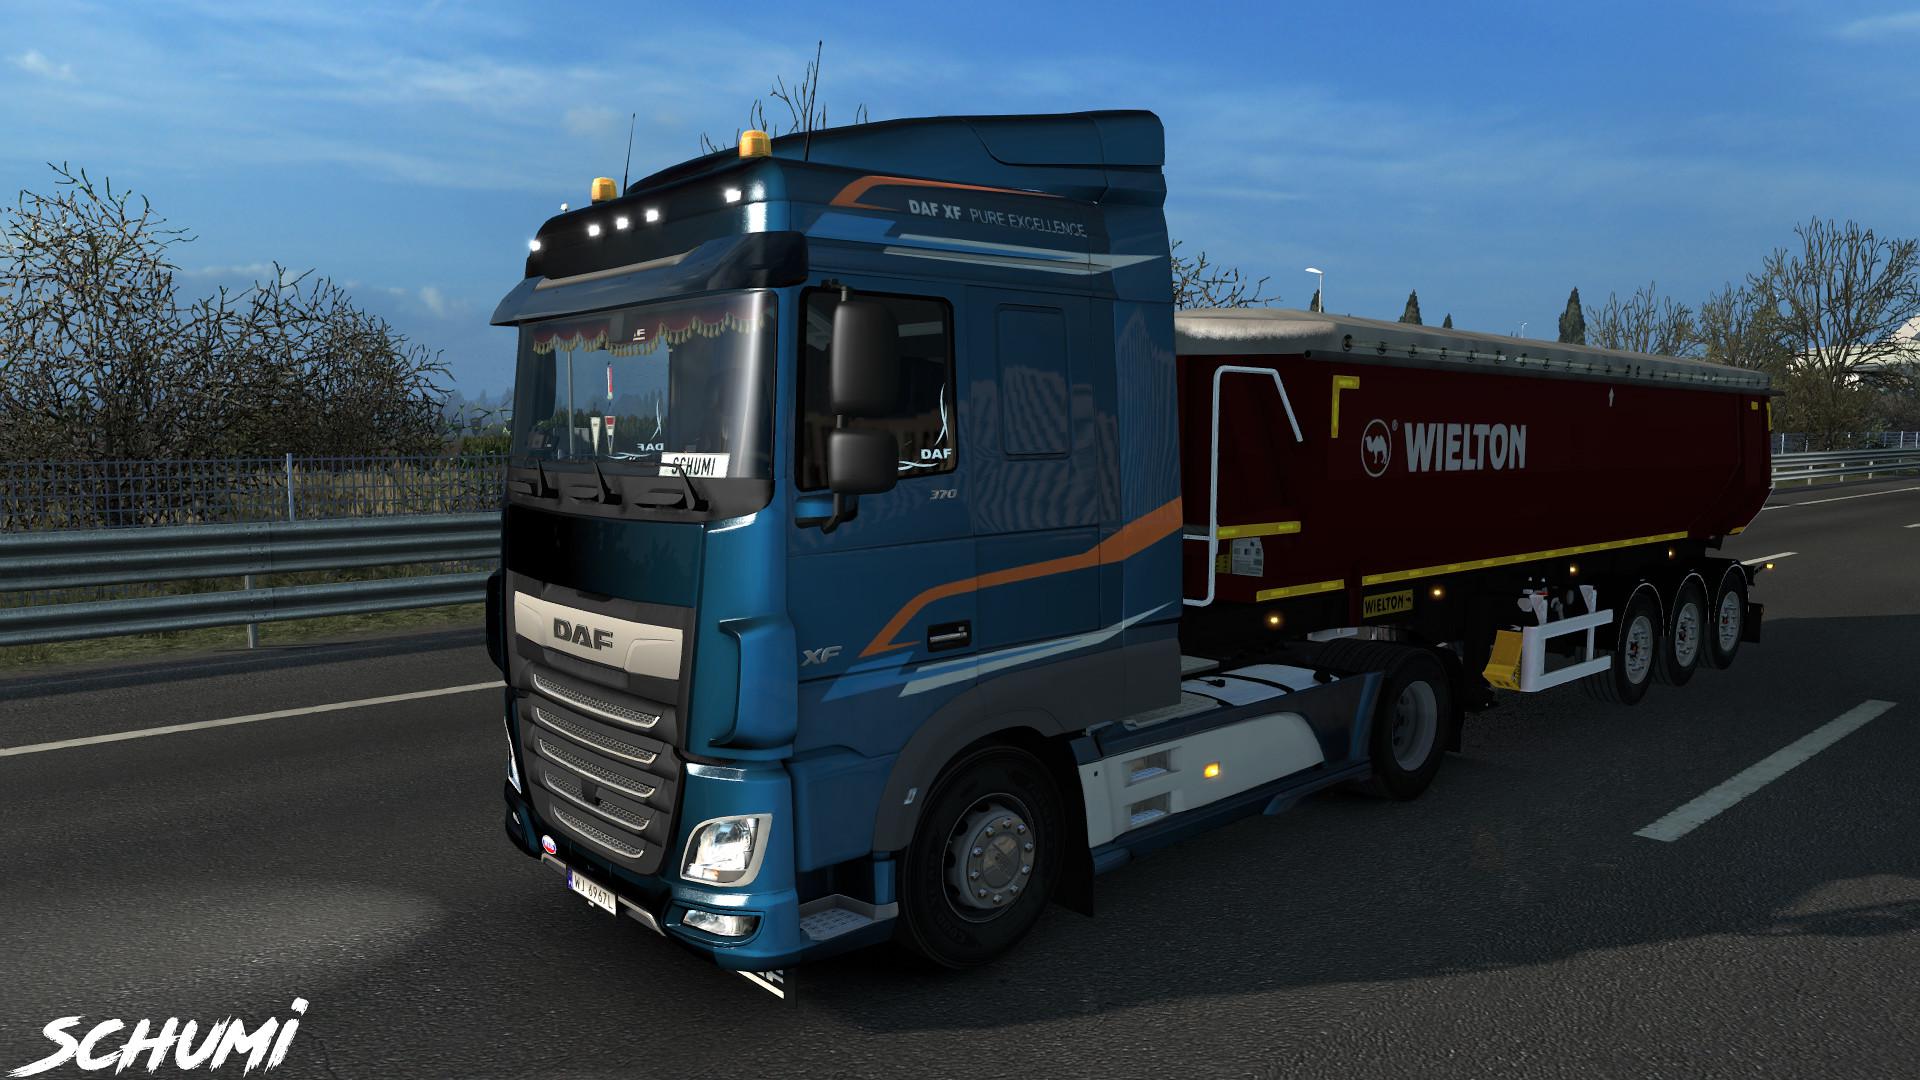 Ets2 Trailer Wielton Pack V13 139x Euro Truck Simulator 2 Modsclub 3843